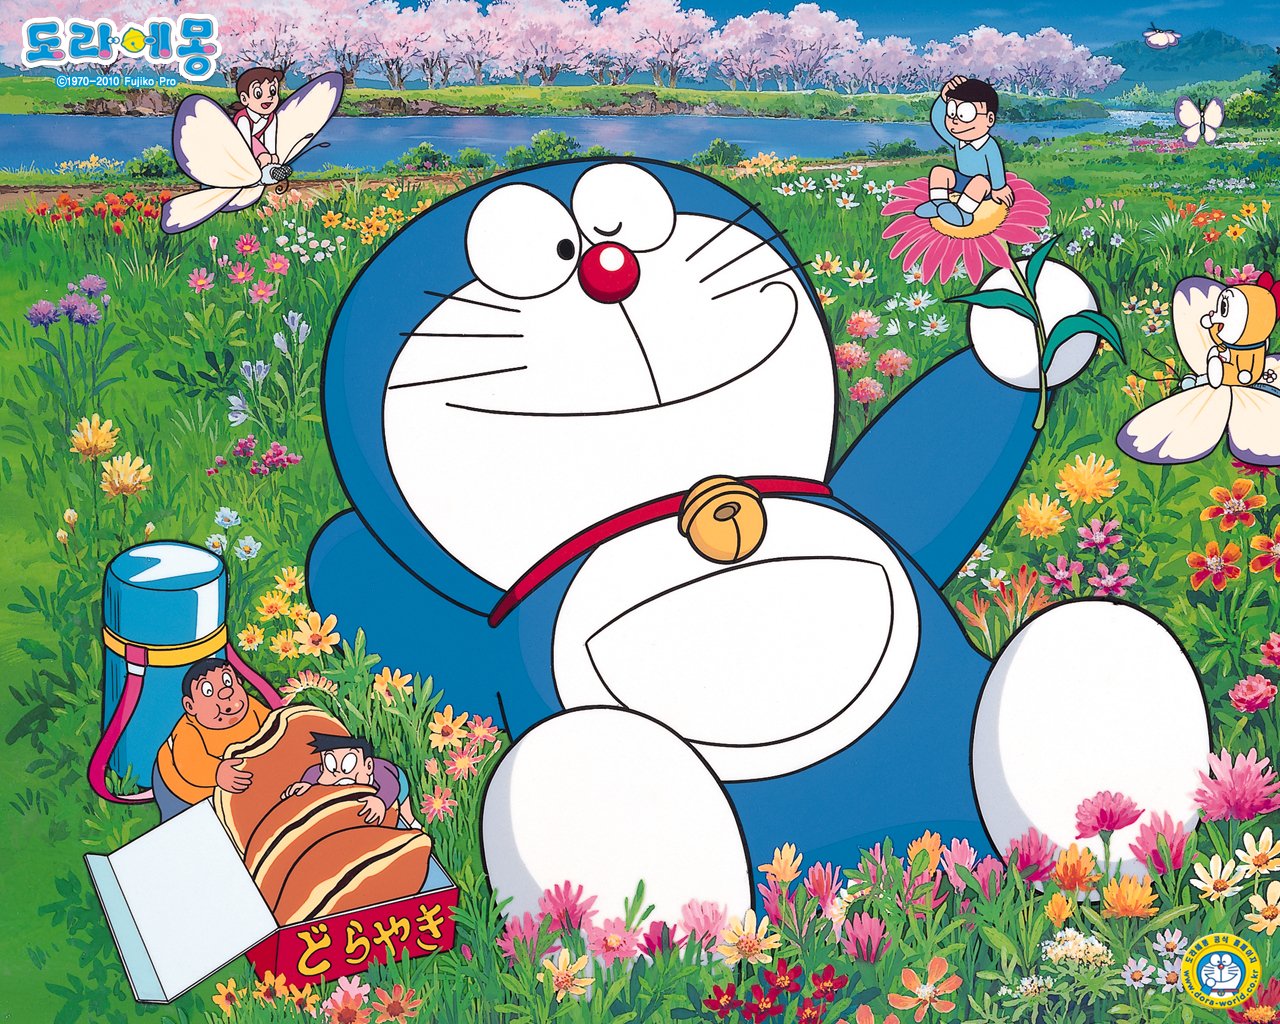 Gambar Wallpaper  Doraemon  Terbaru  Kampung Wallpaper 